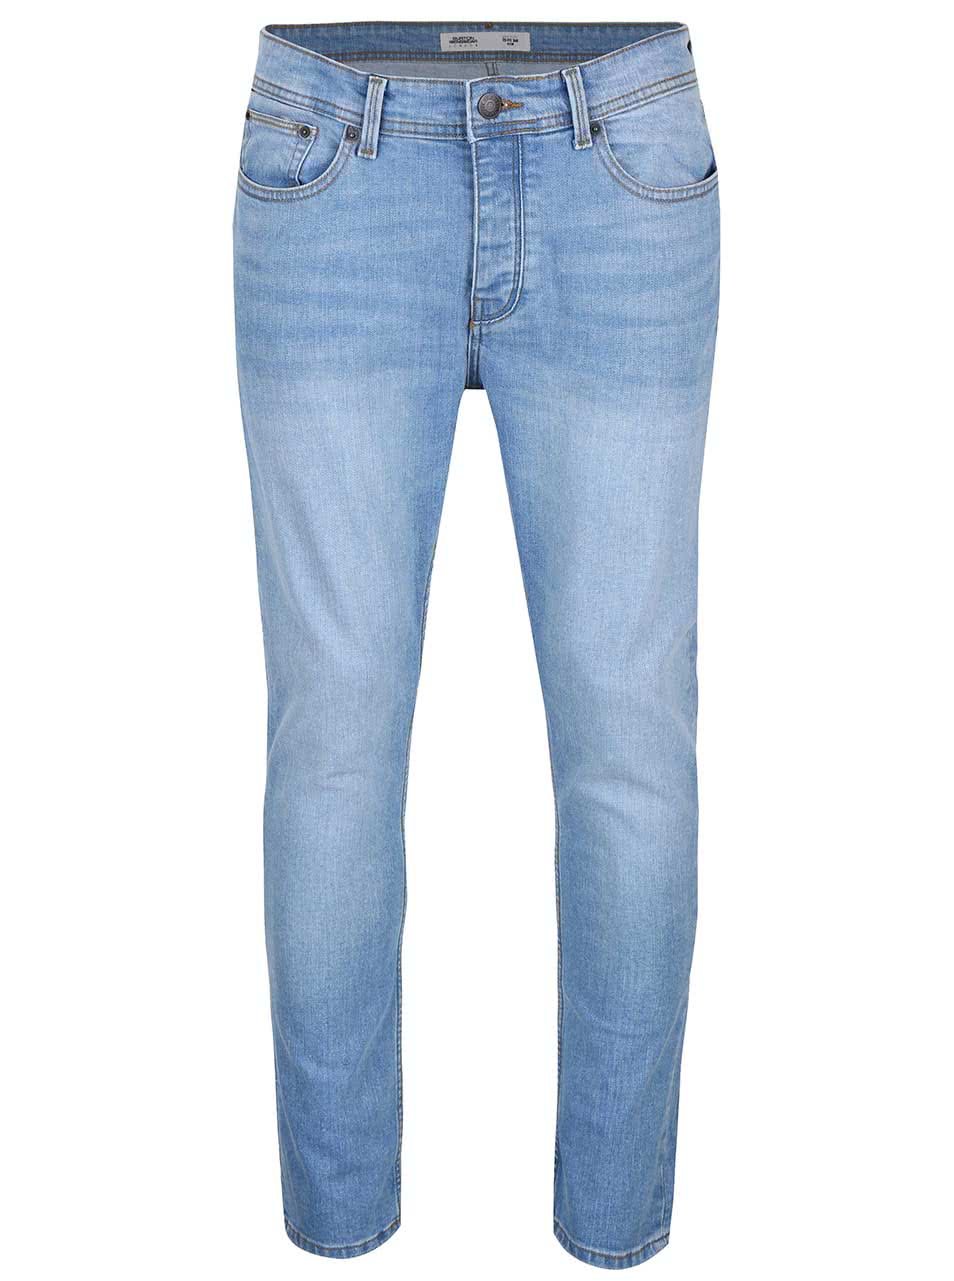 Modré džíny s ošoupaným efektem Burton Menswear London